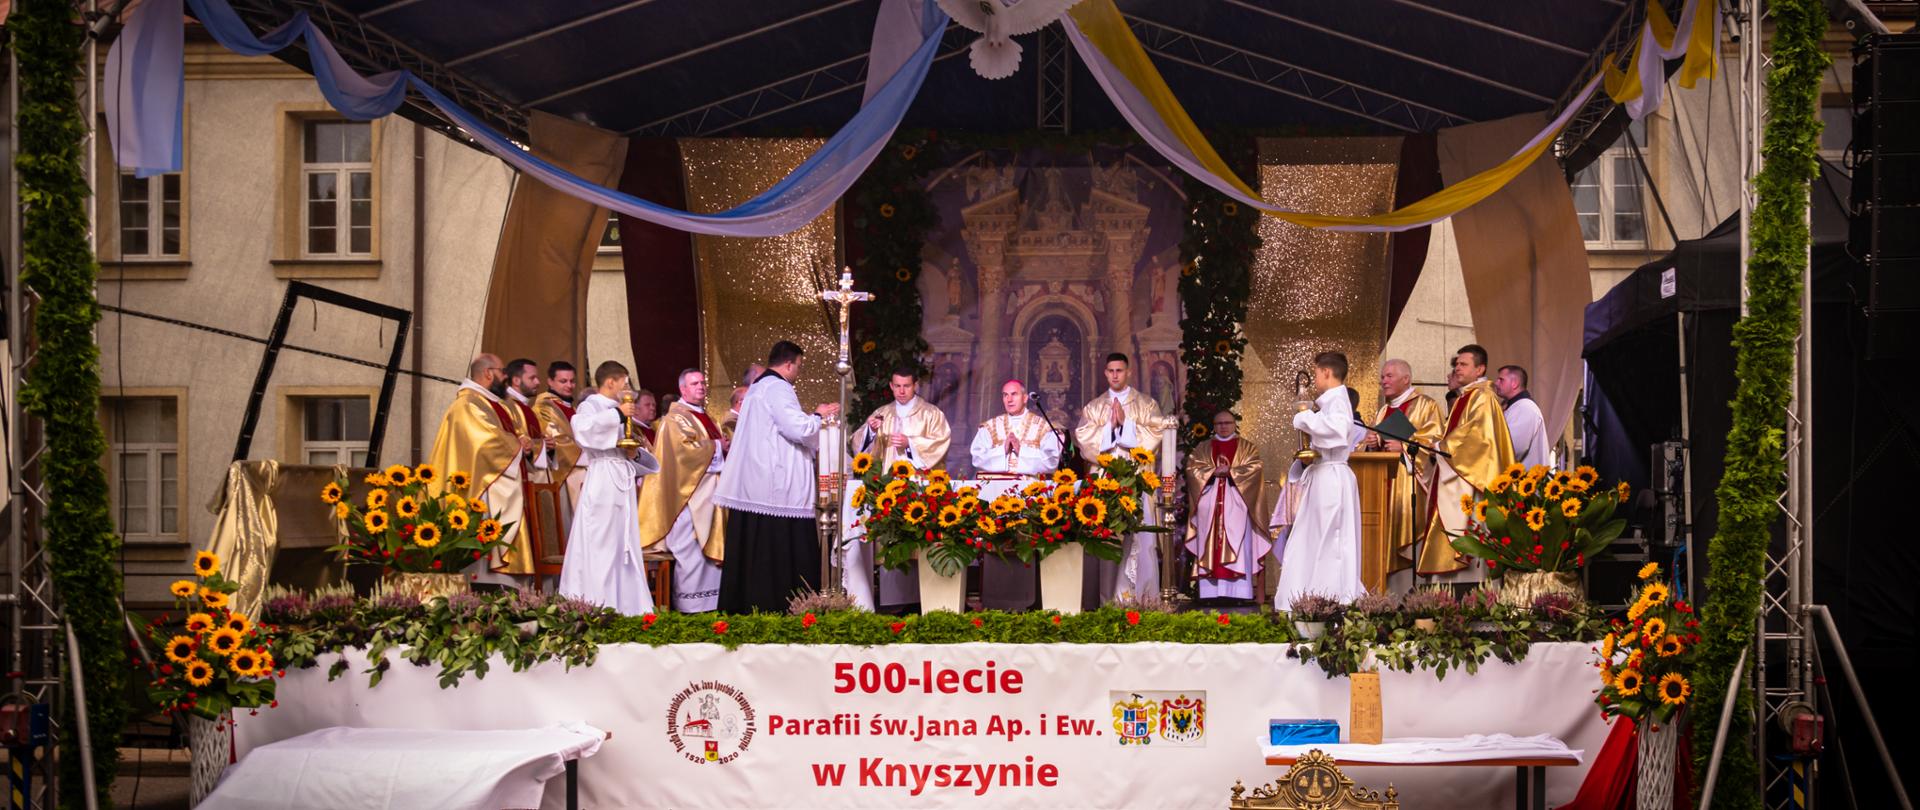 500-lecie parafii w Knyszynie